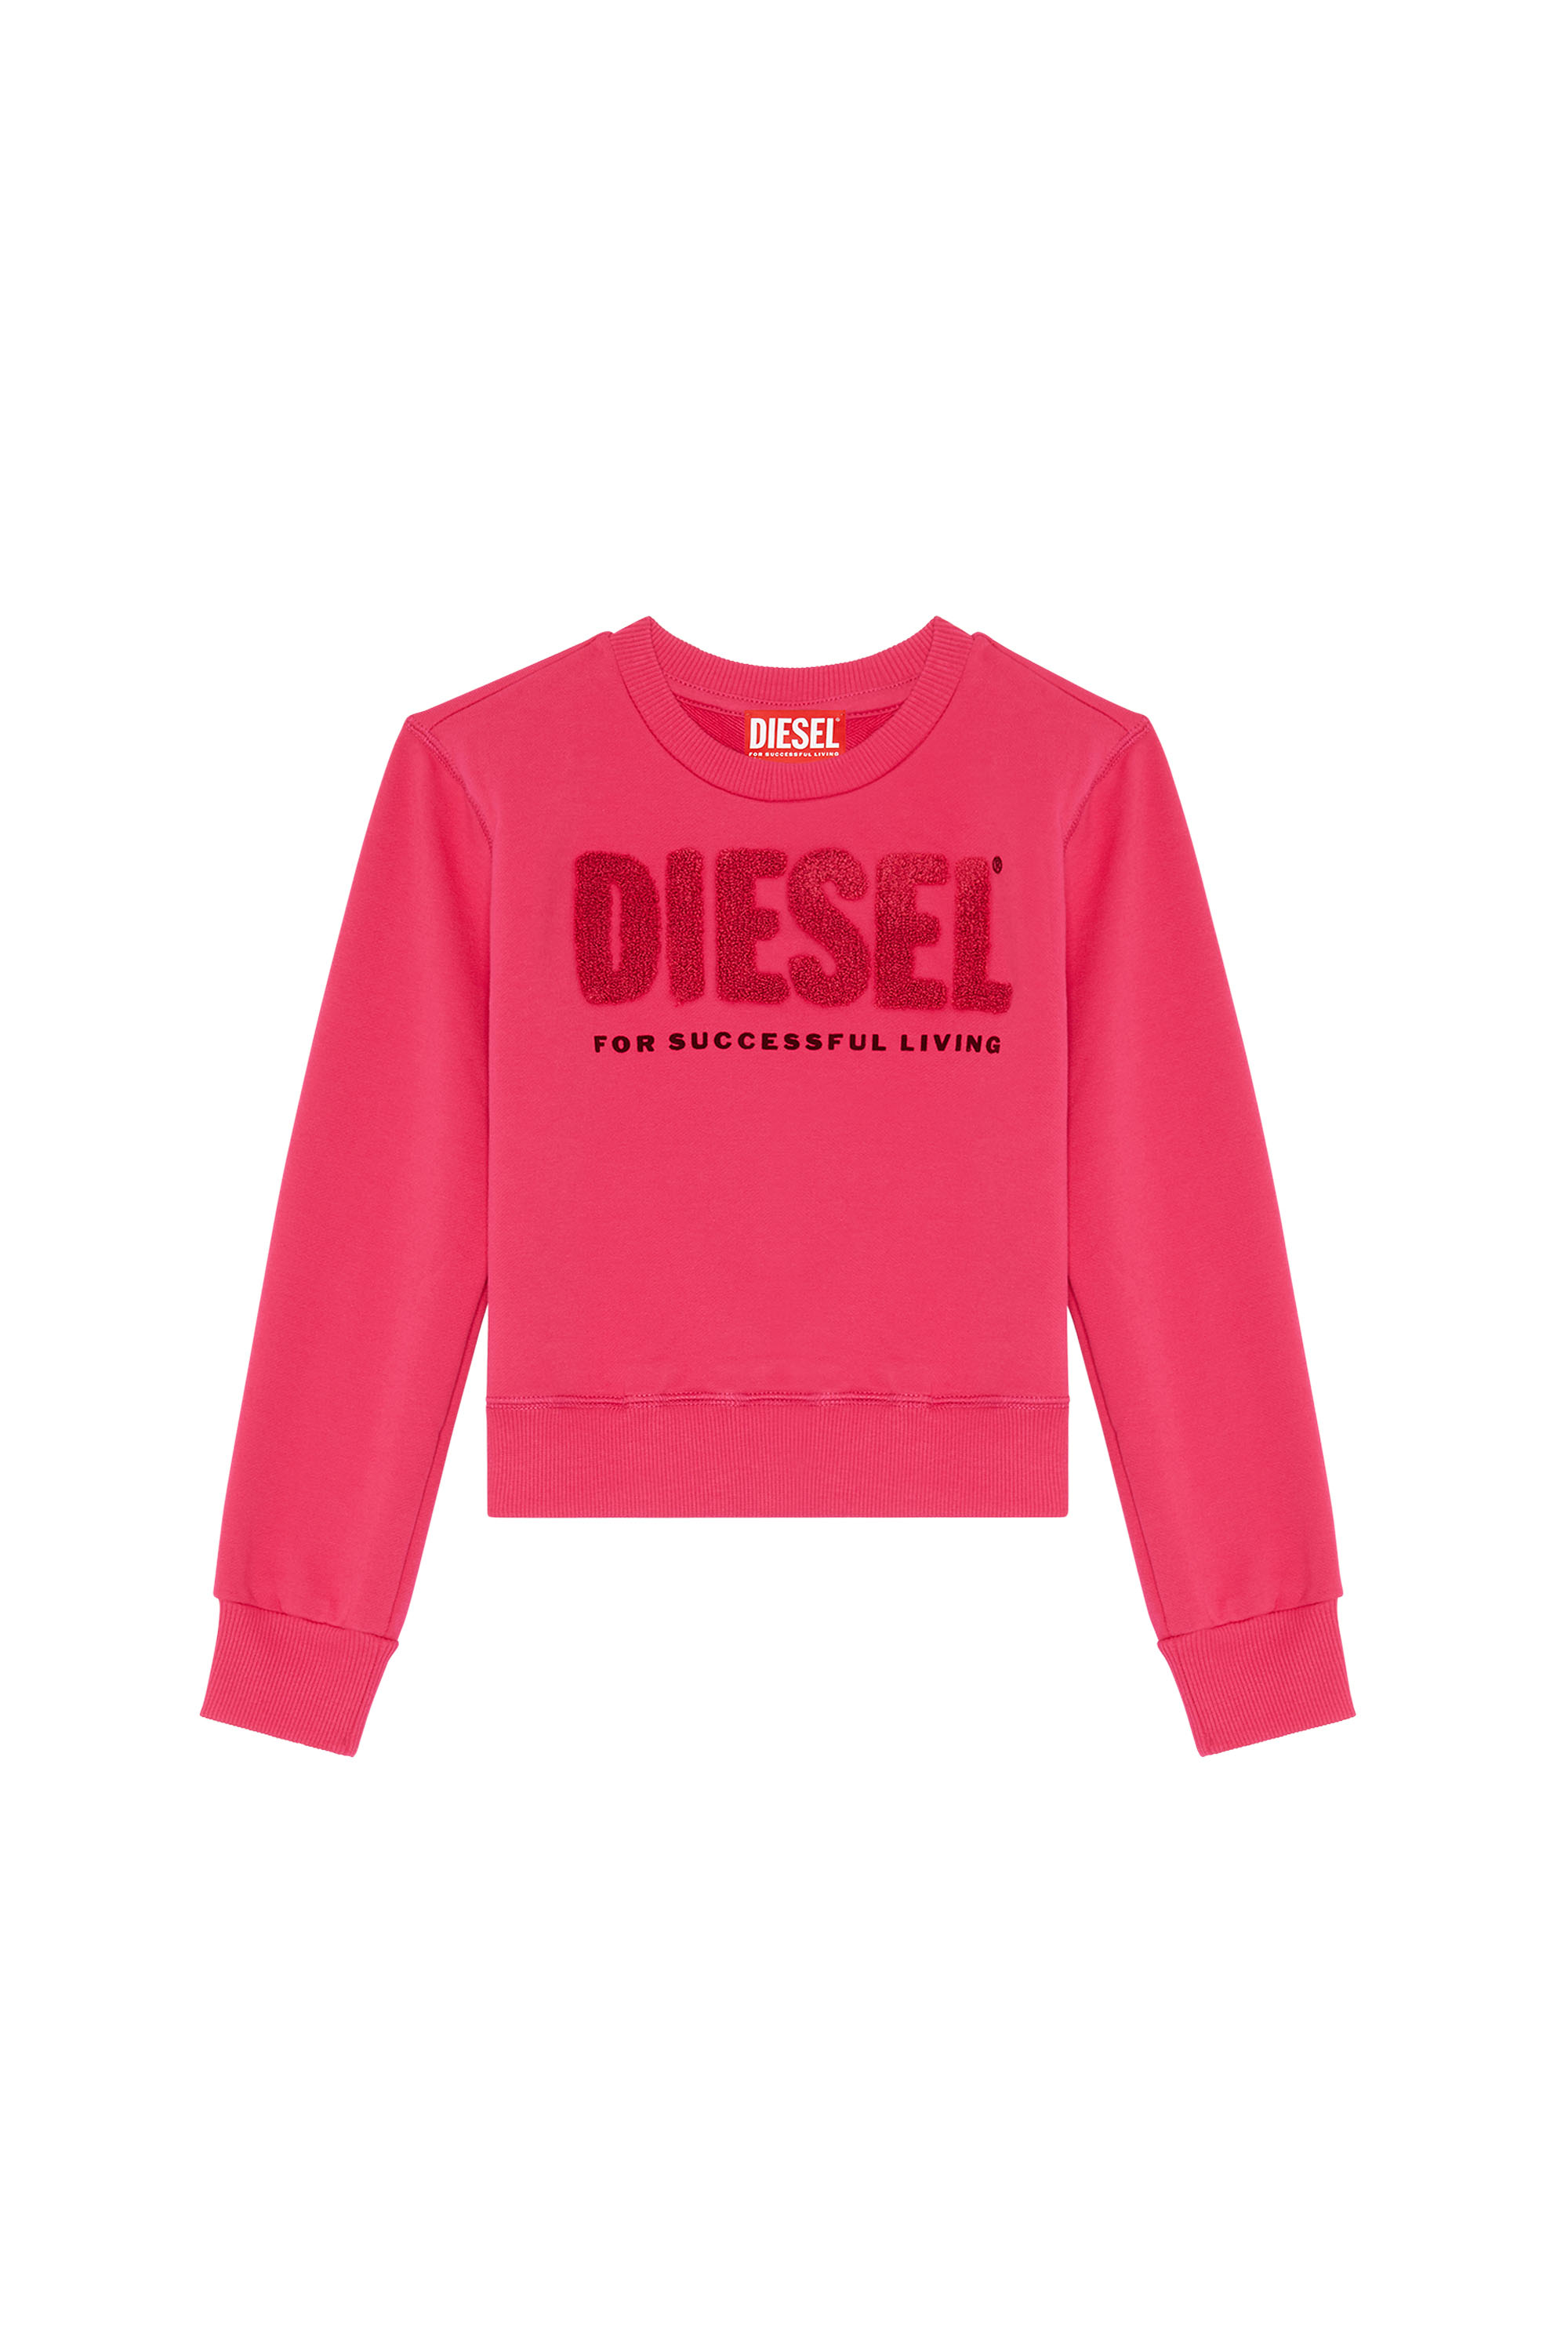 Diesel - SLIMMYDIE, Pink - Image 1